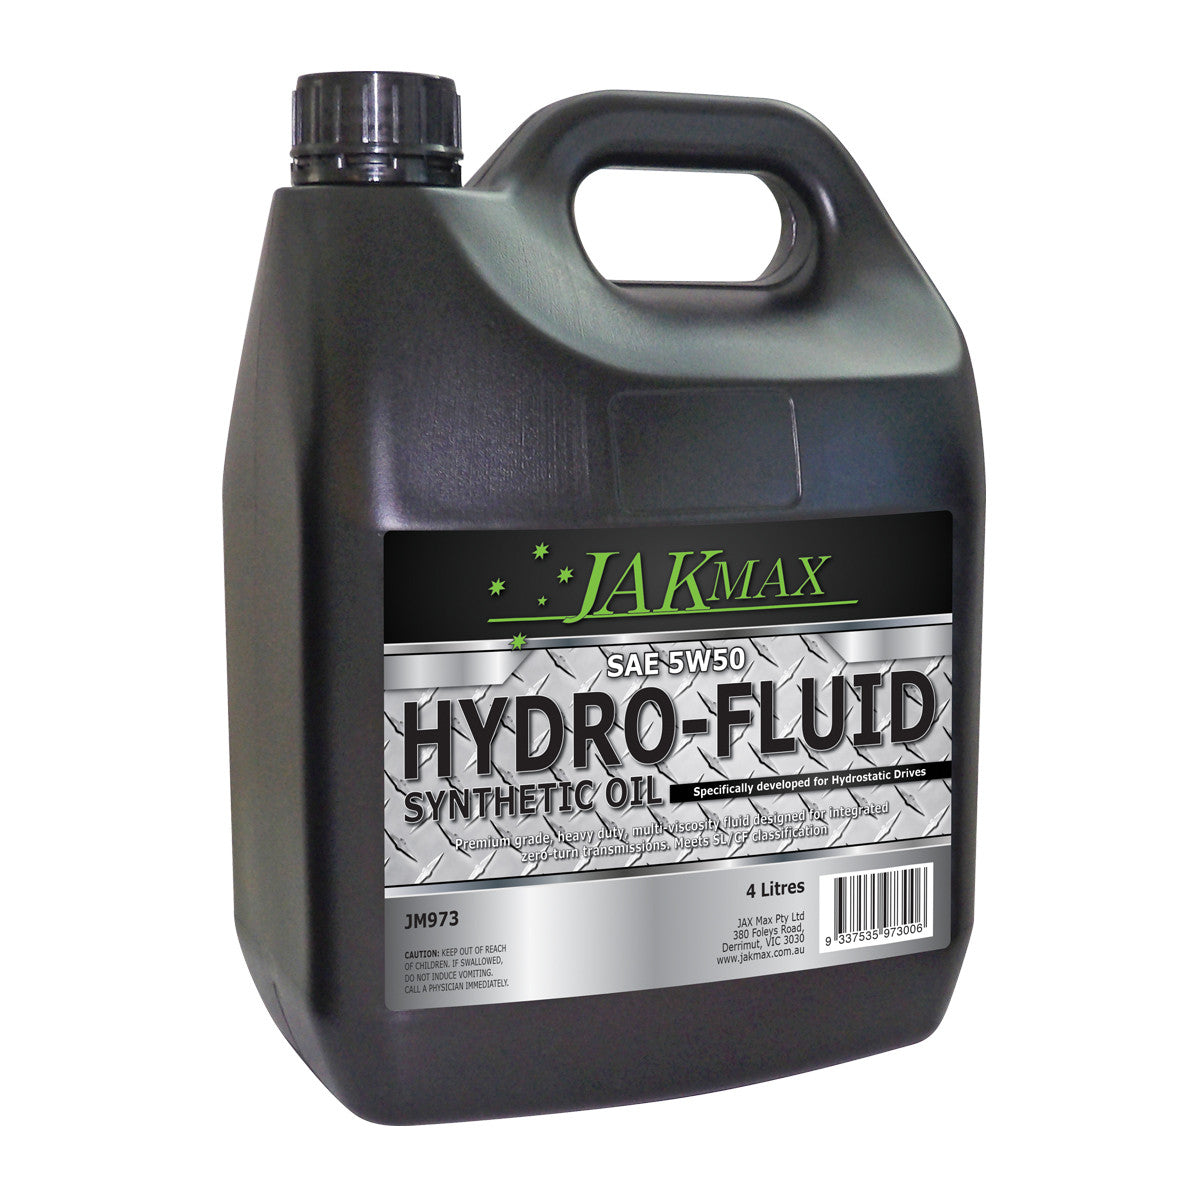 JakMax 5W50 Synthetic Oil Hydro-Fluid 4L